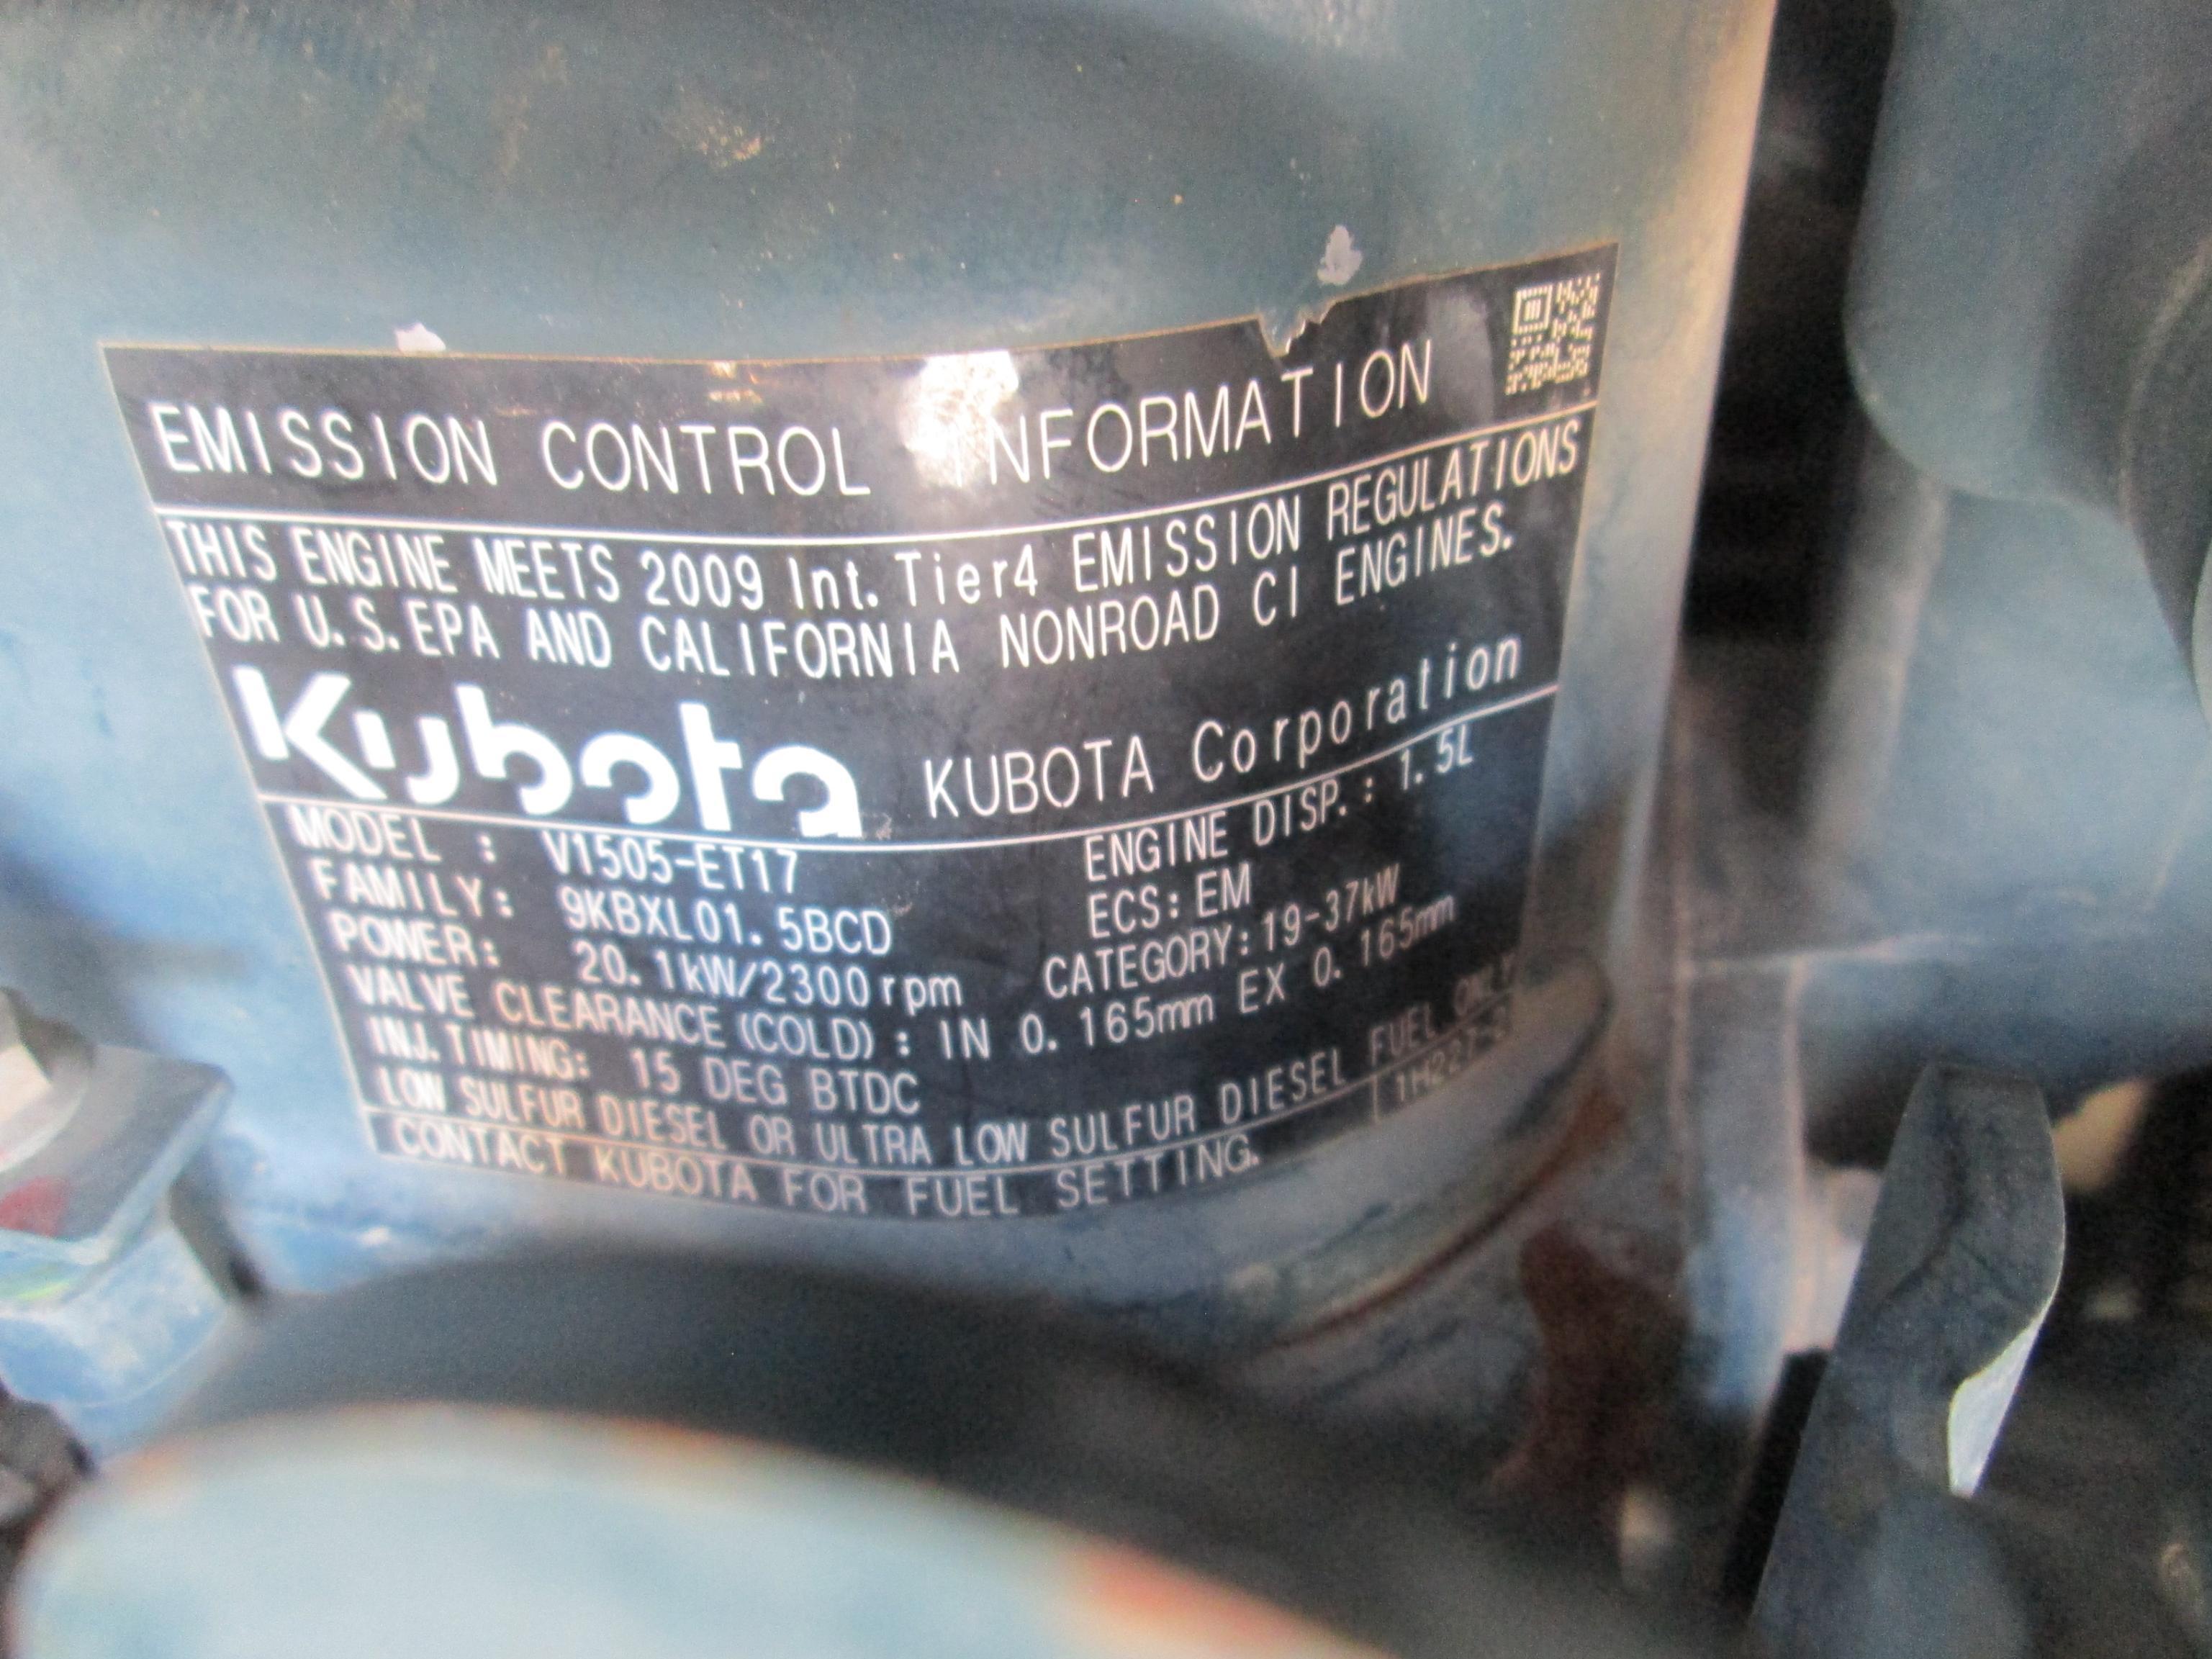 KUBOTA KX71-3S HYDRAULIC EXCAVATOR SN 1235 Powered by Kubota diesel engine EPA sticker, equipped